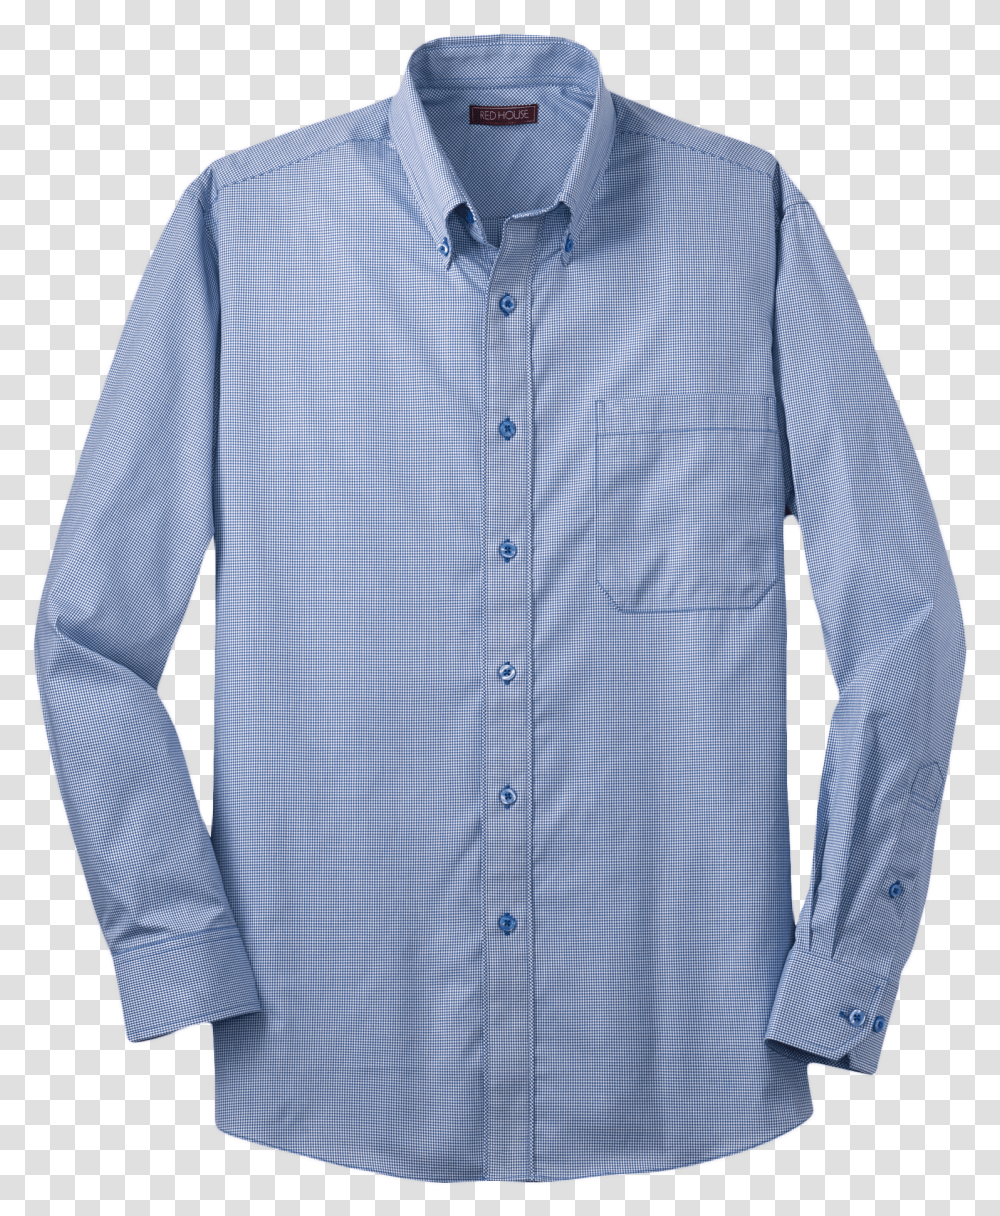 Mini Check Non Iron Button Down Shirt Marjo Uniformes Transparent Png